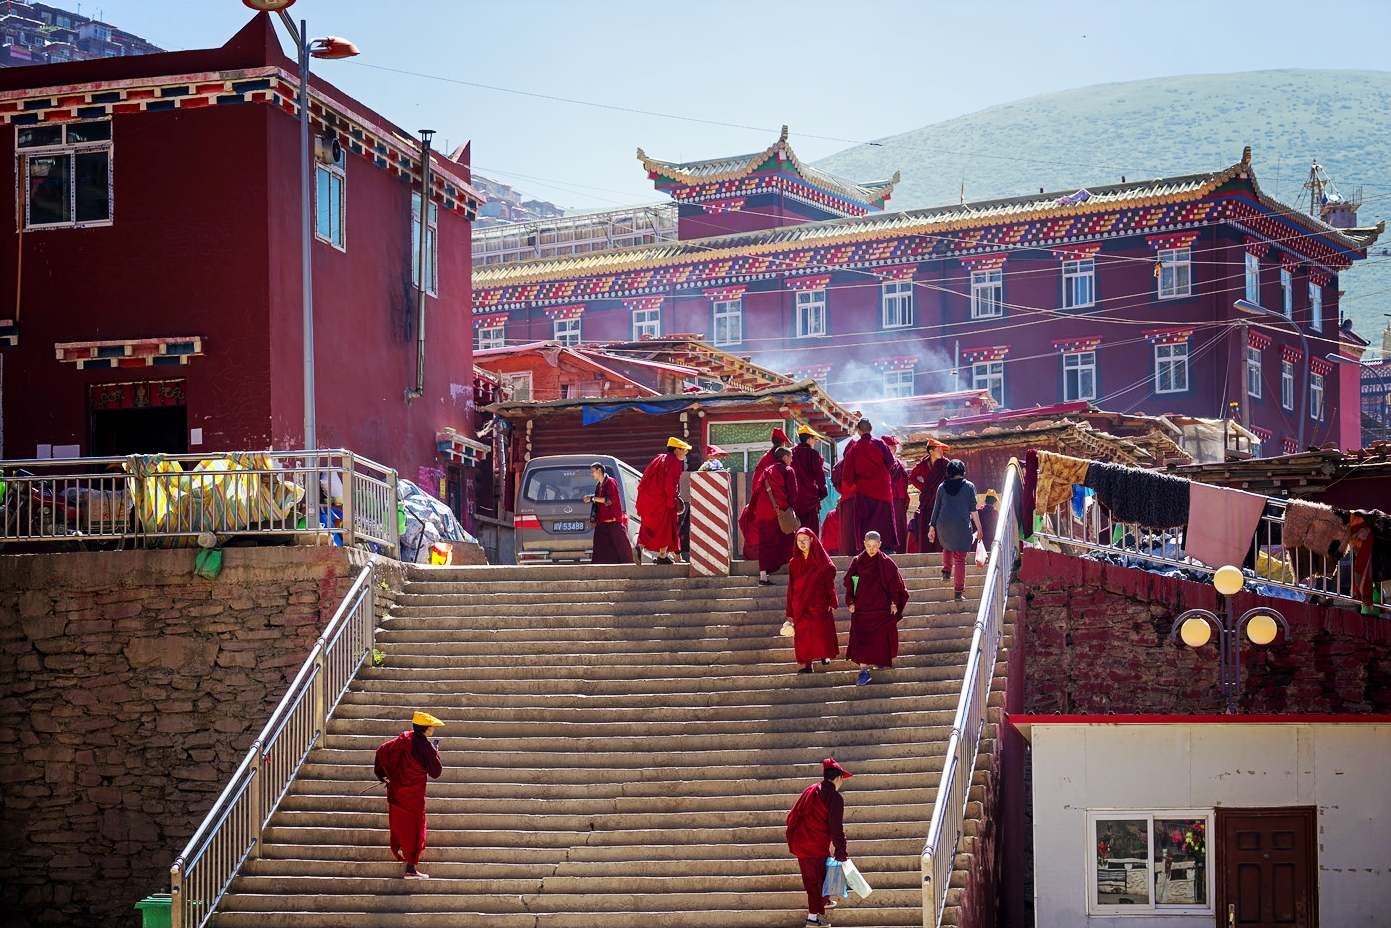 中国佛学院普陀山学院举行2021年秋季入学升旗仪式